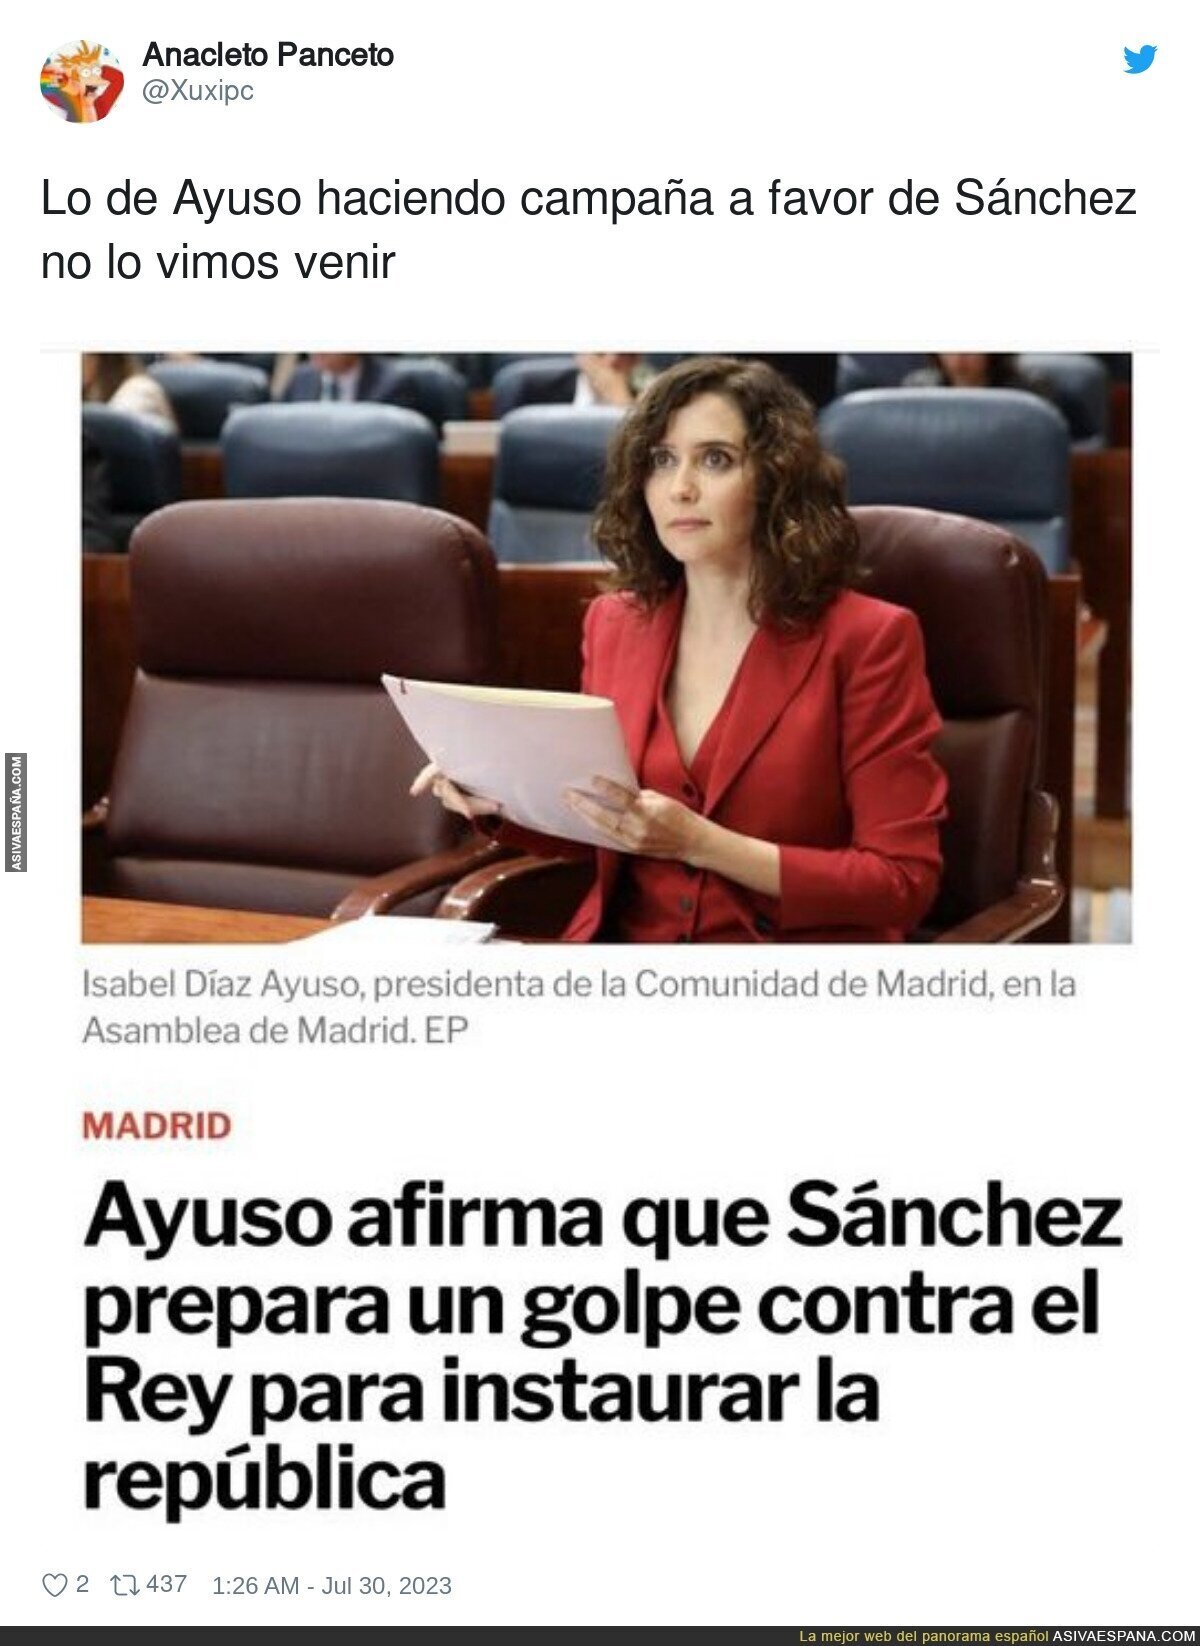 El plan malvado de Pedro Sánchez que gustará a la izquierda